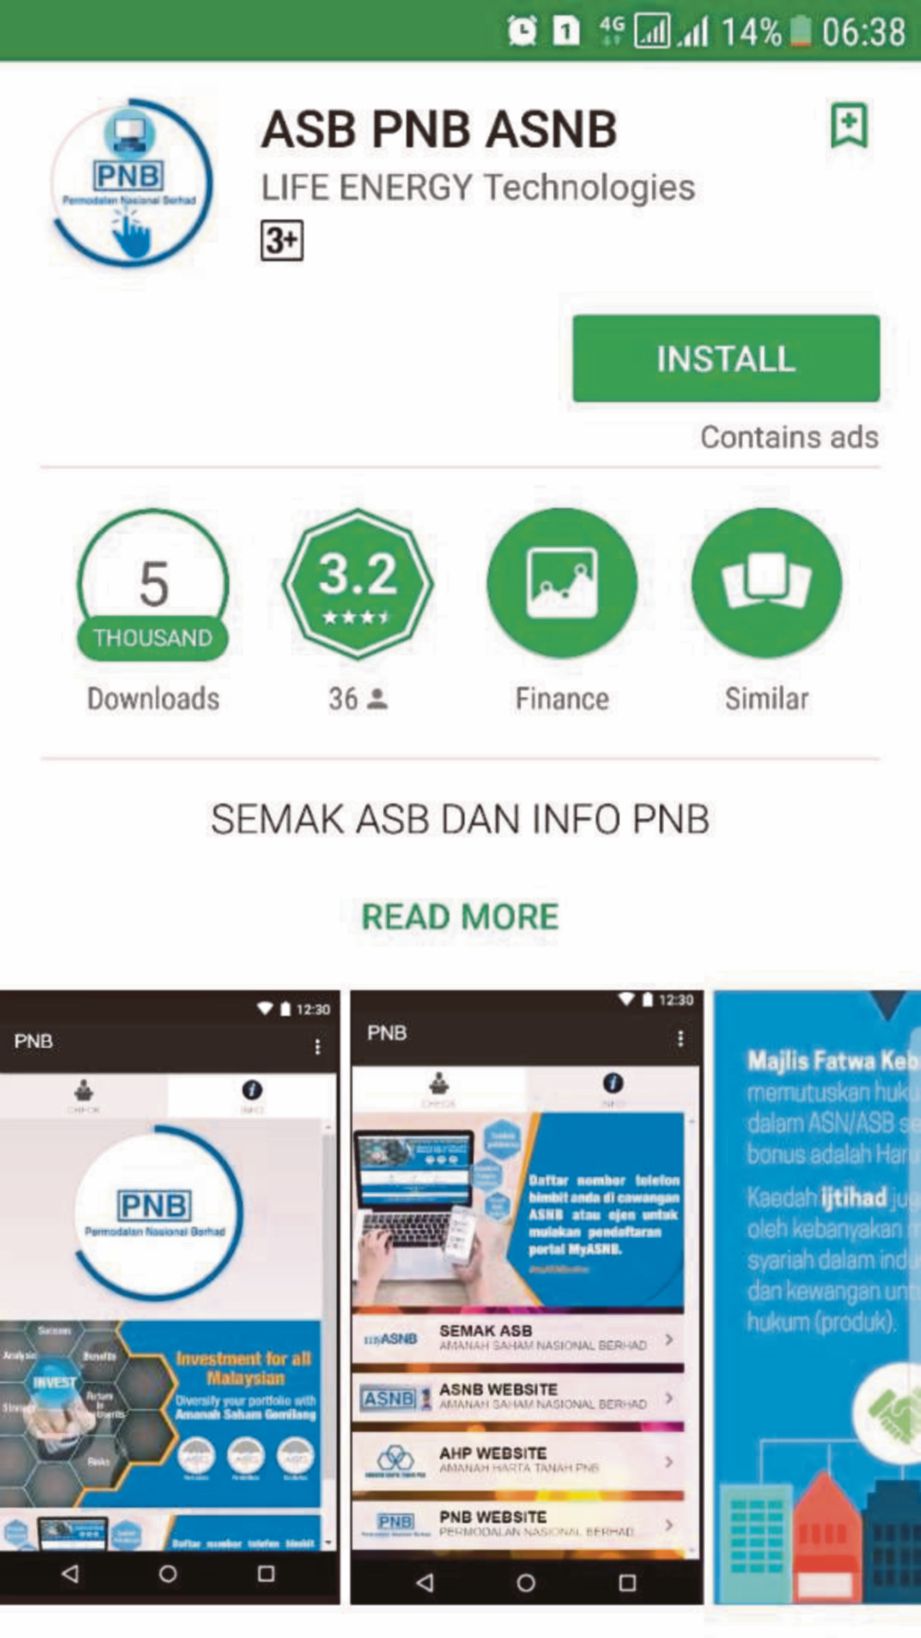 Aplikasi yang menggunakan nama dan logo PNB tanpa kebenaran. 